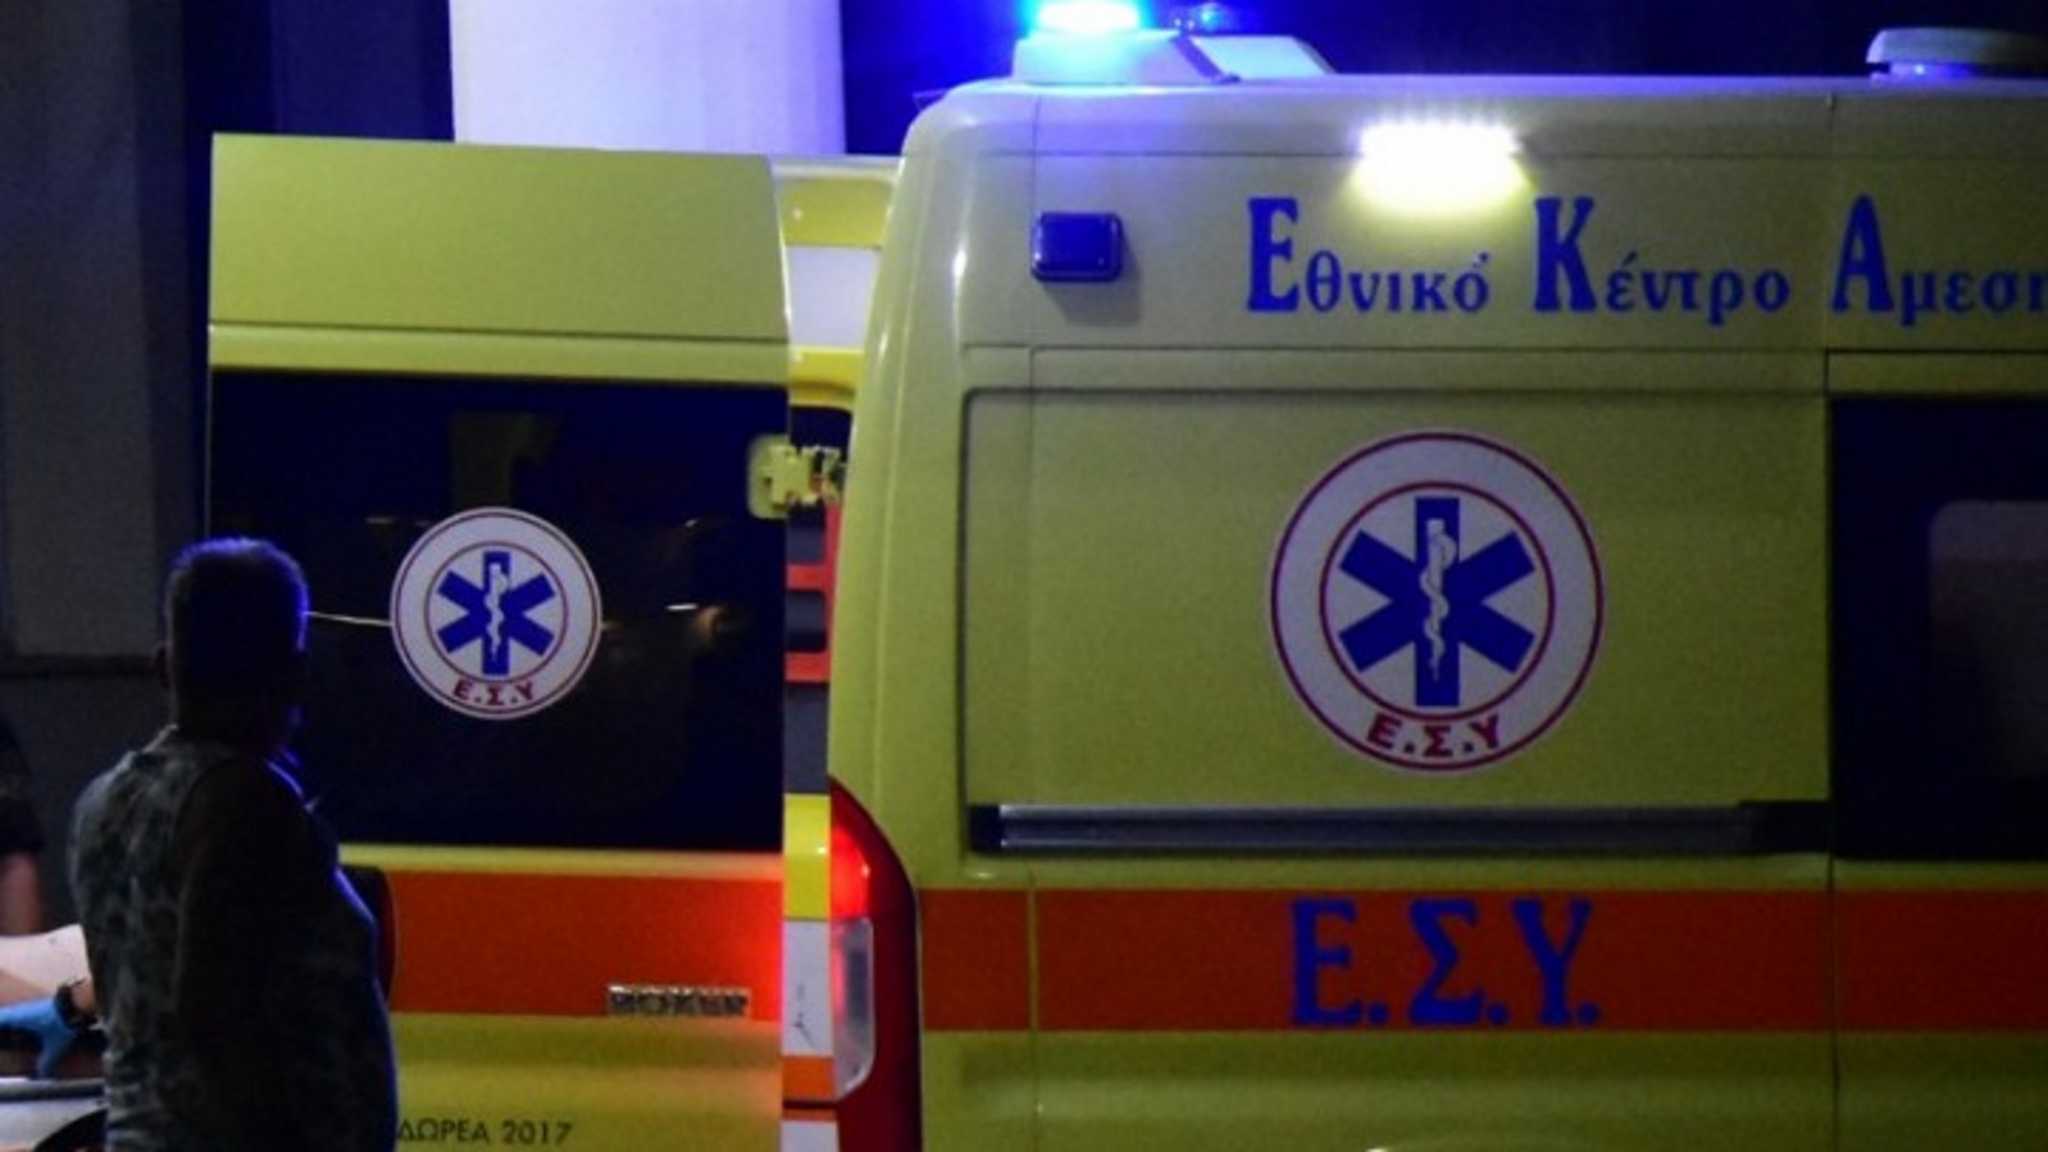 Σοκ στο Βόλο: Ασθενής που νοσηλευόταν για κορονοϊό αυτοκτόνησε πέφτοντας από τον 7ο όροφο του νοσοκομείου - Φωτογραφία 1